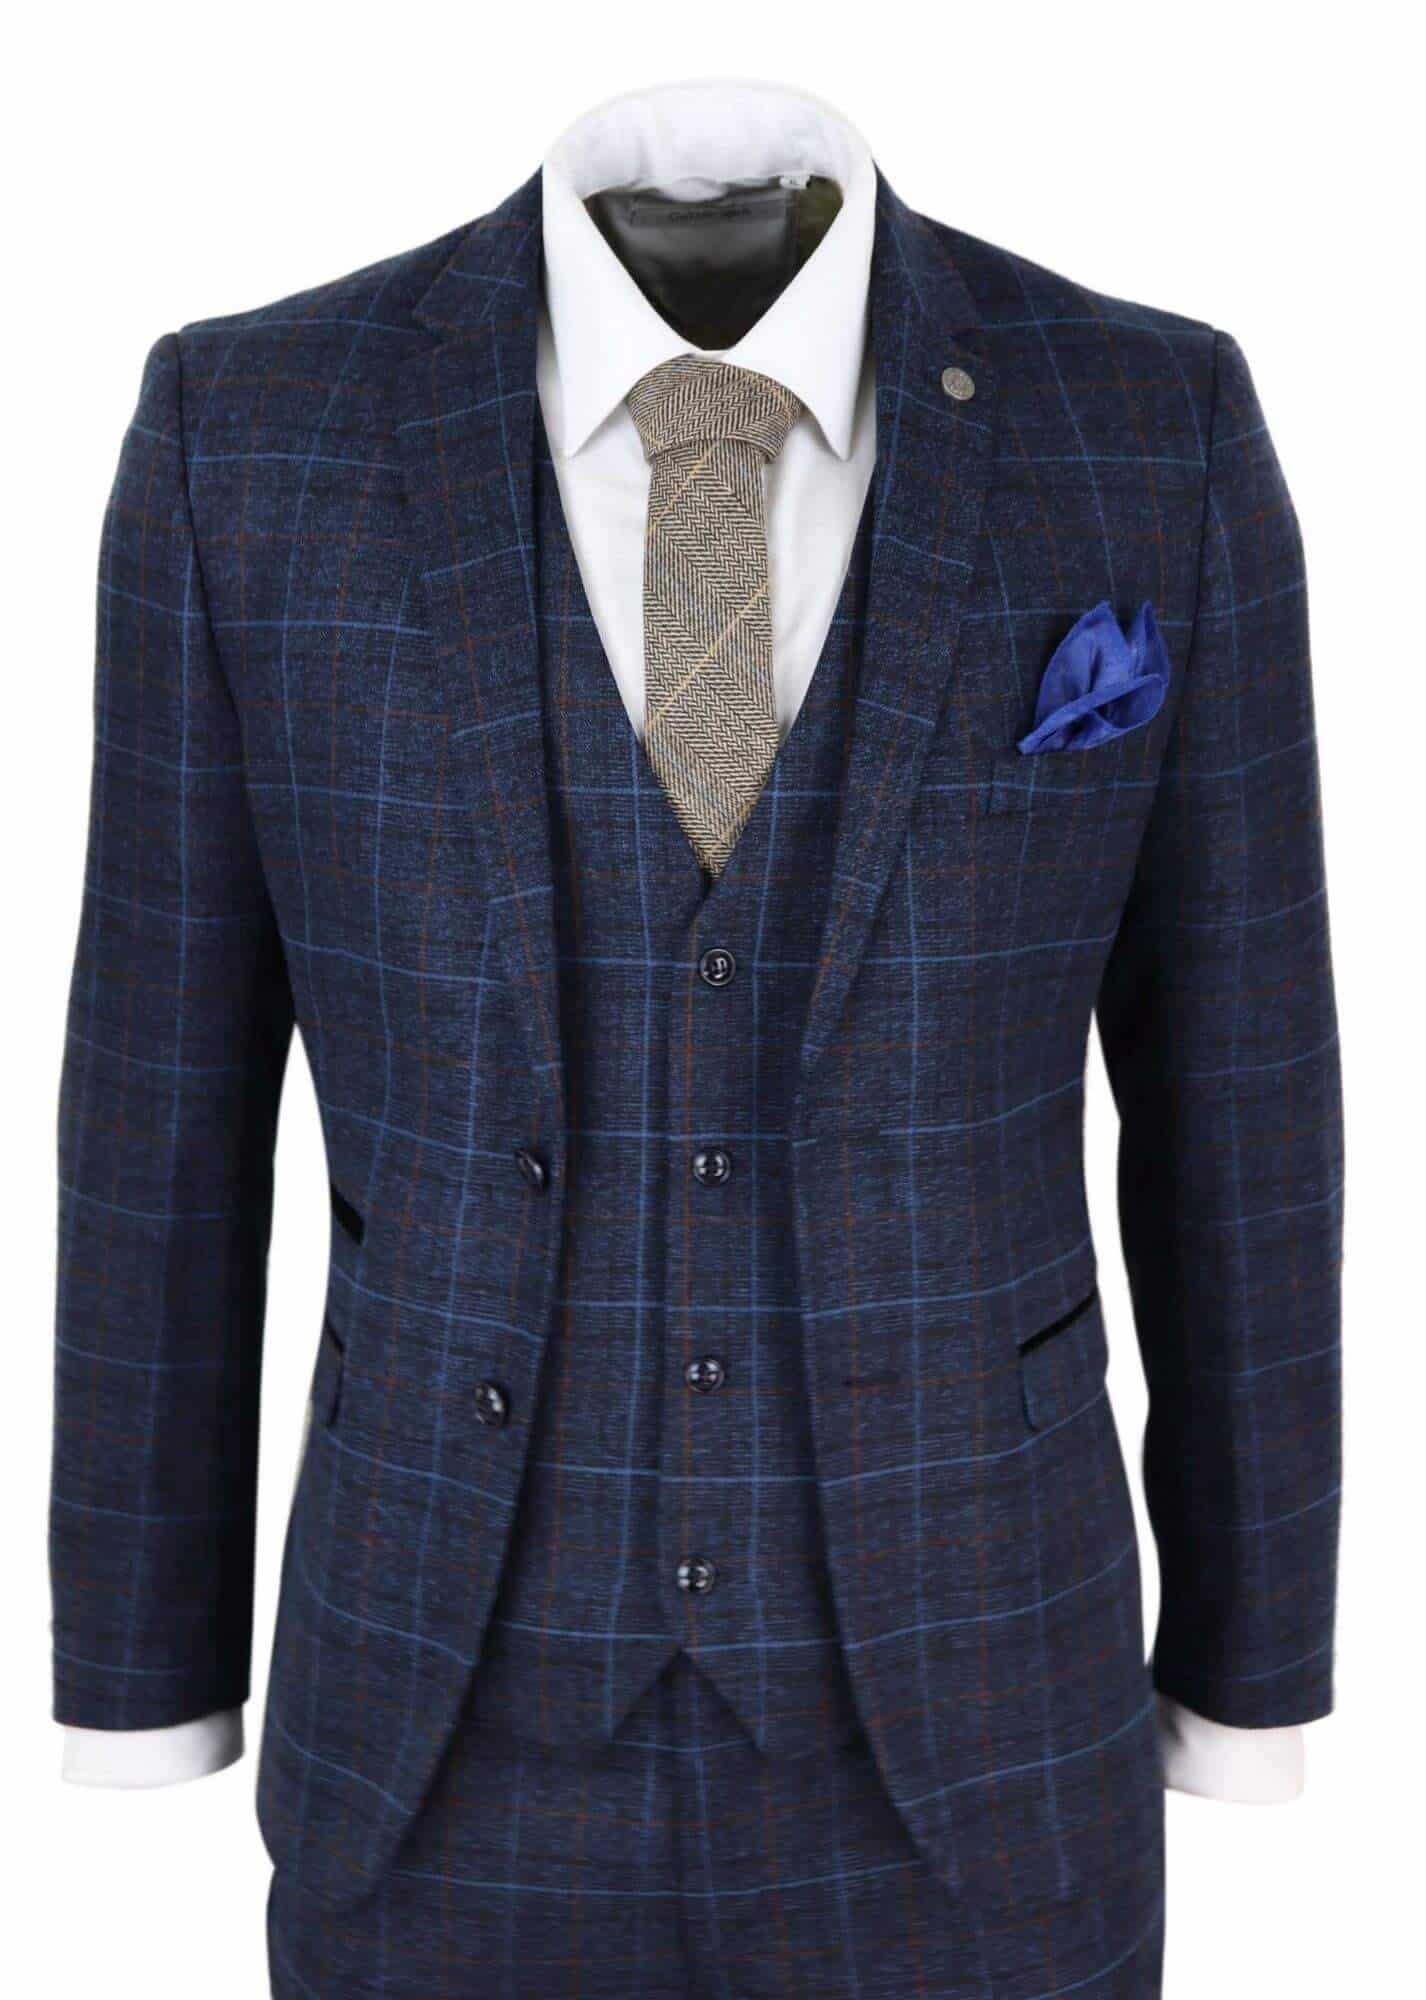 Men's Navy-Blue Tweed Check Suit - Paul Andrew Harvey: Buy Online ...